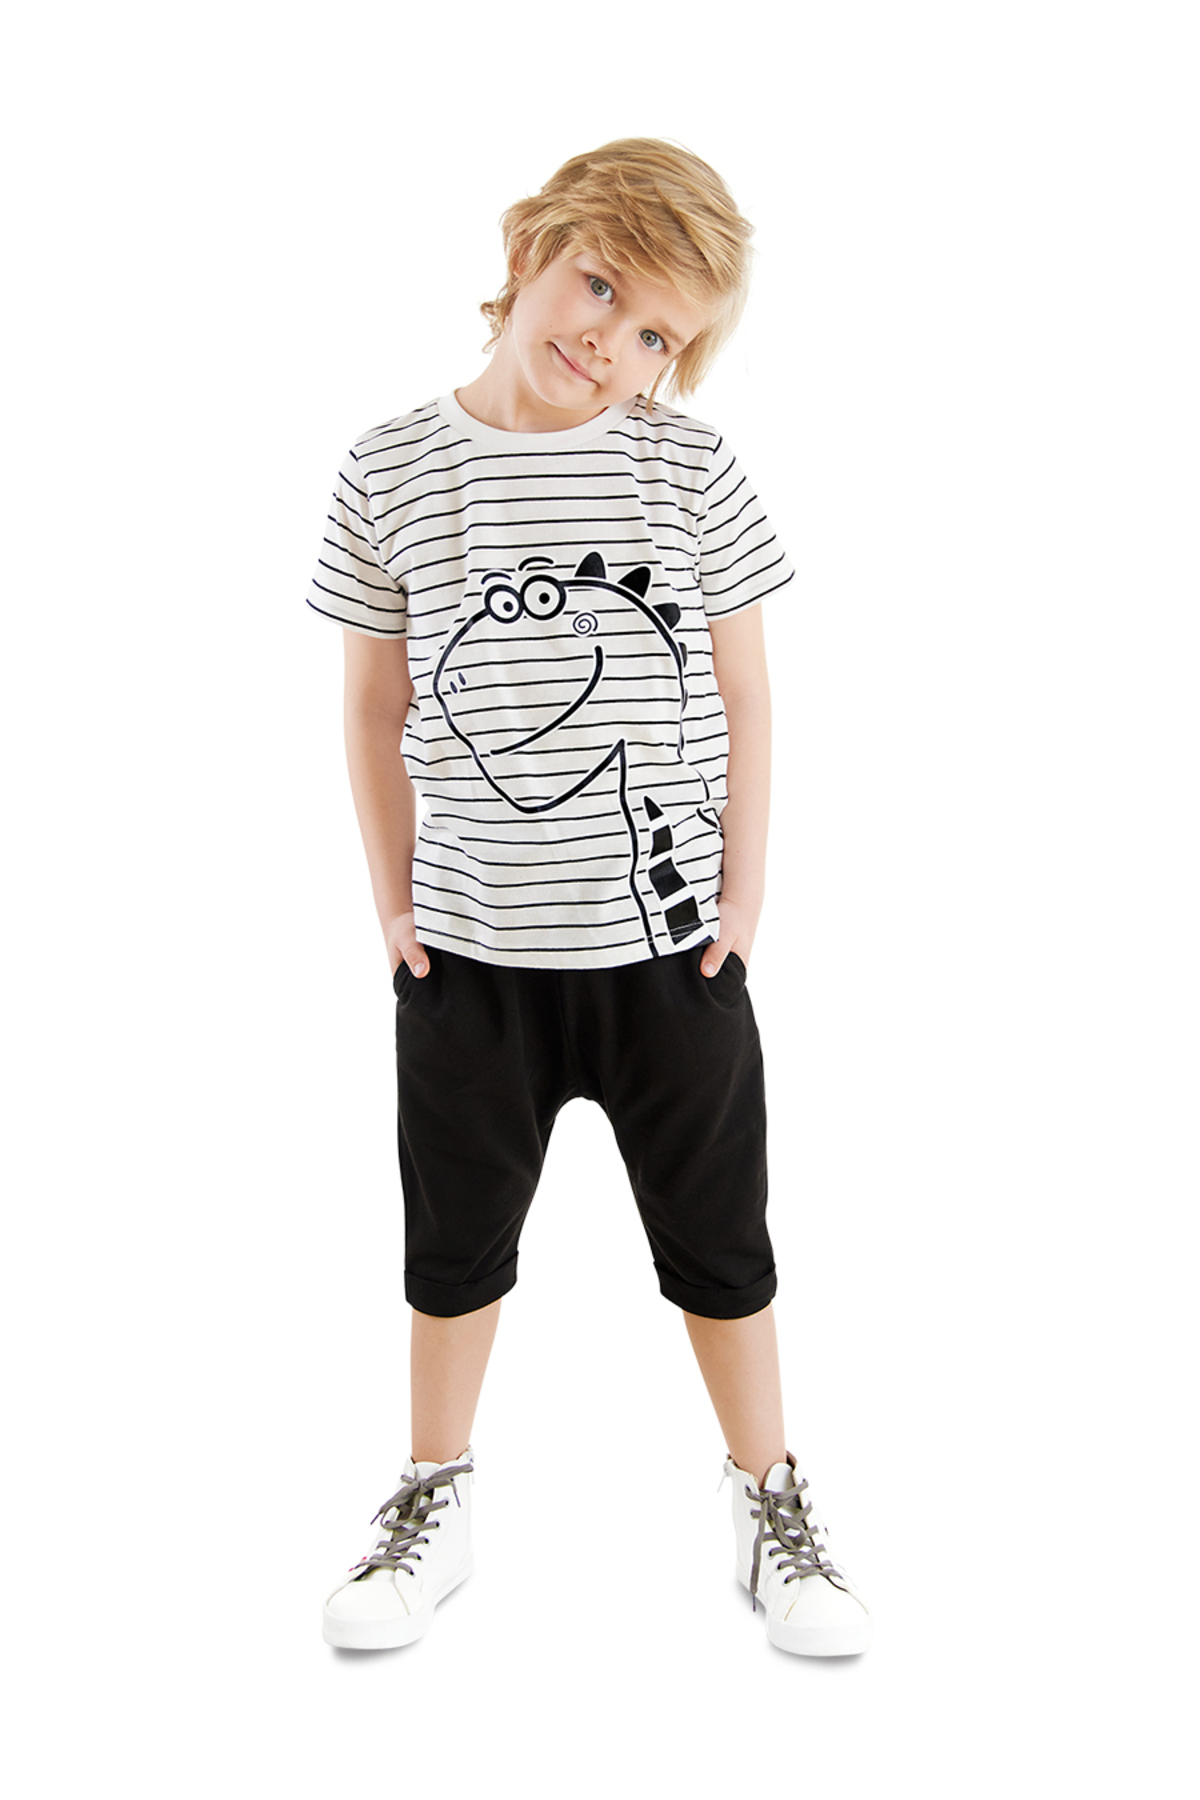 Levně Denokids Cute Dino Boy T-shirt Capri Shorts Set